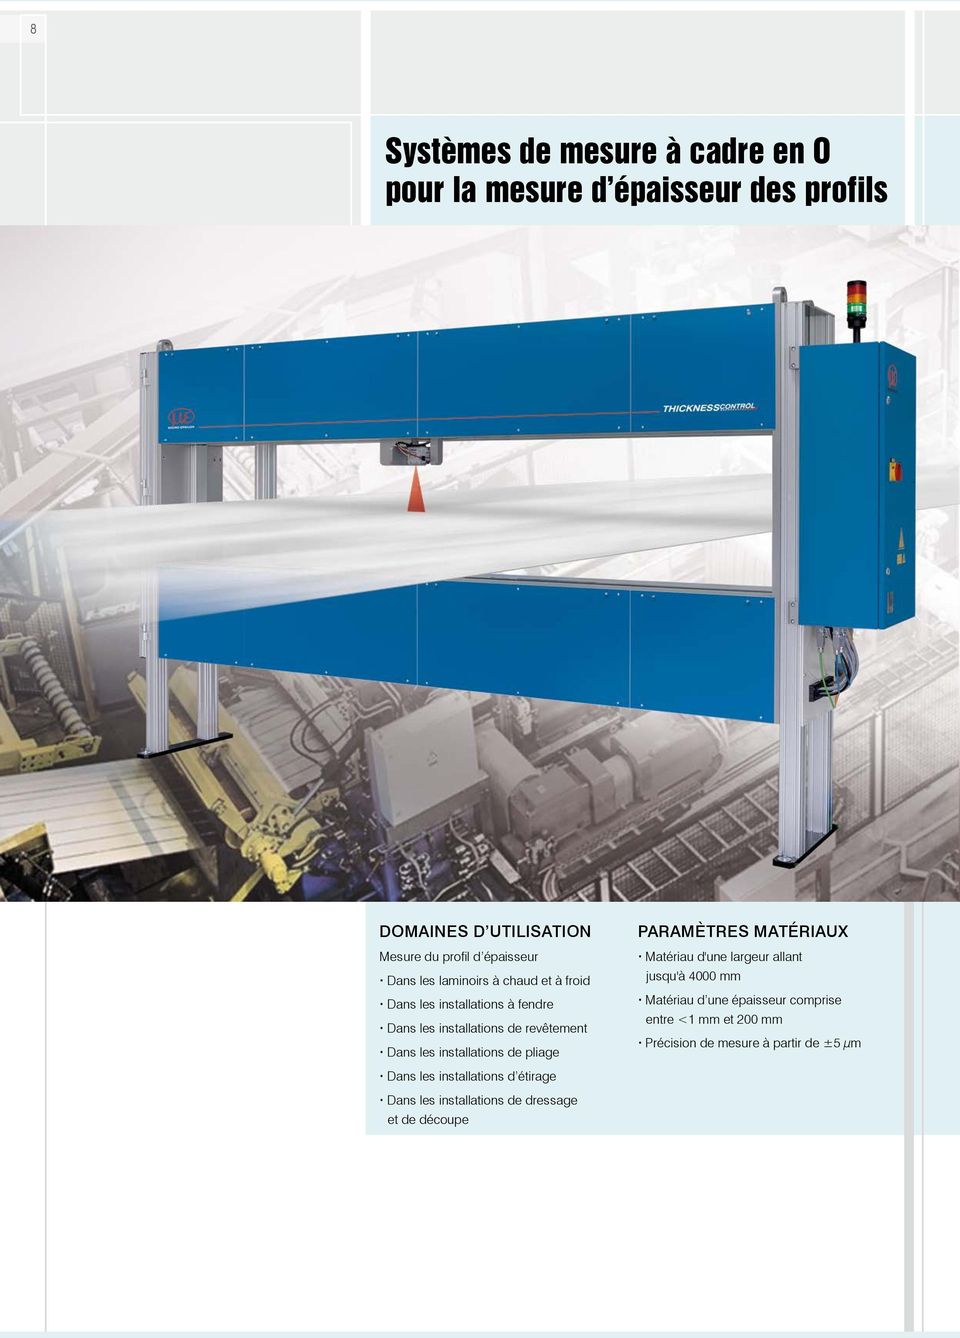 installations de pliage Paramètres matériaux Matériau d'une largeur allant jusqu'à 4000 mm Matériau d une épaisseur comprise